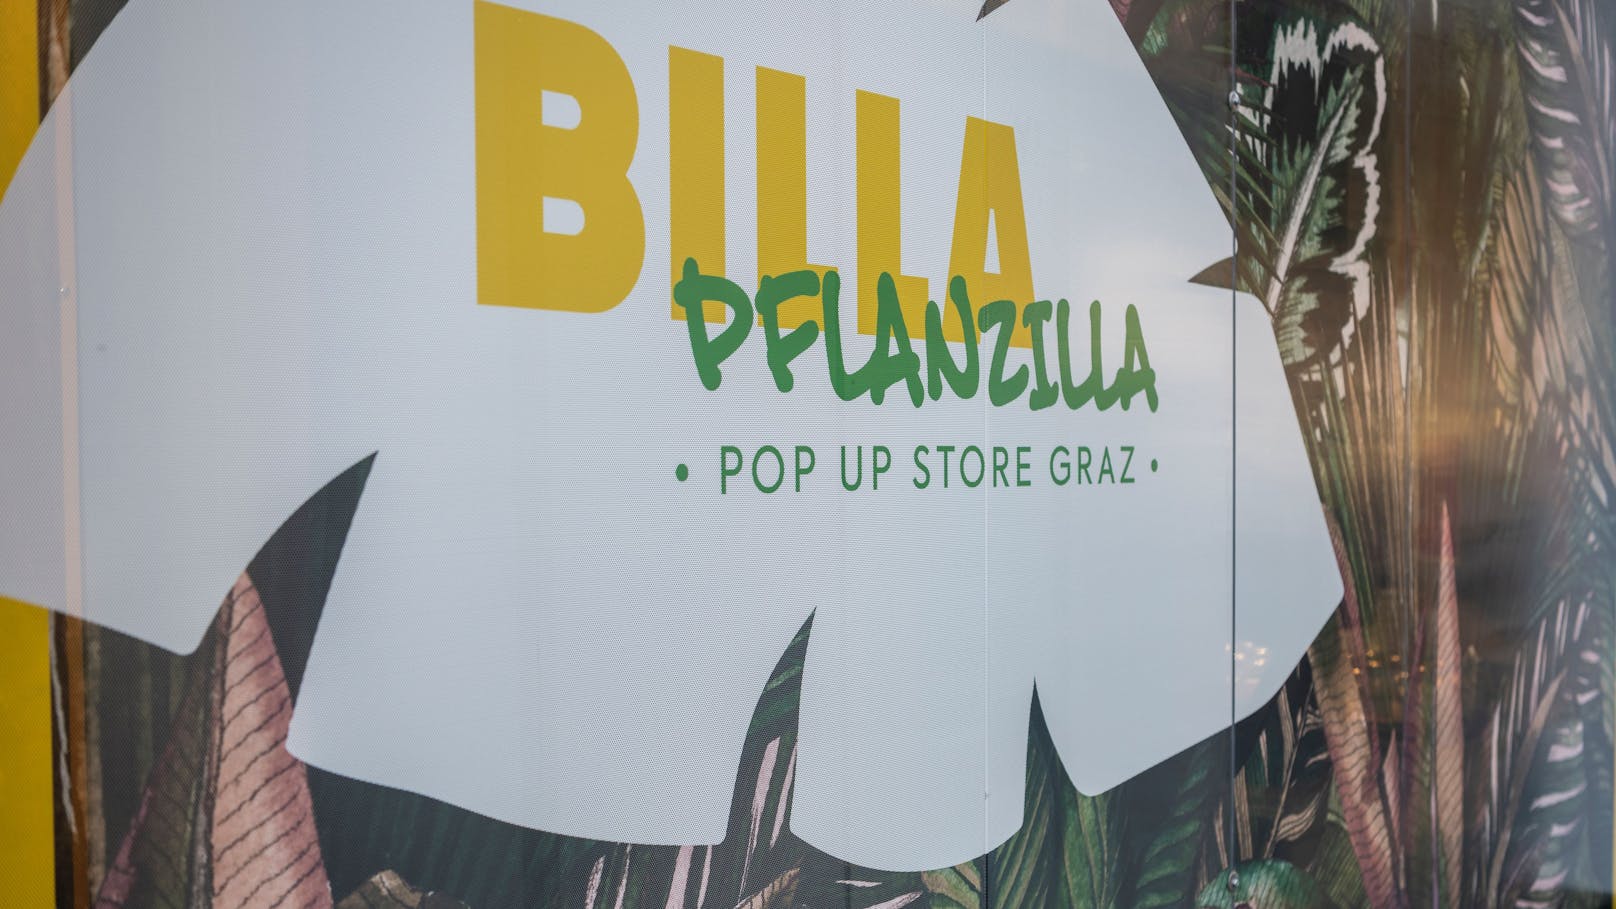 "Pflanzilla"! Veganer Billa-Markt startet jetzt in Graz